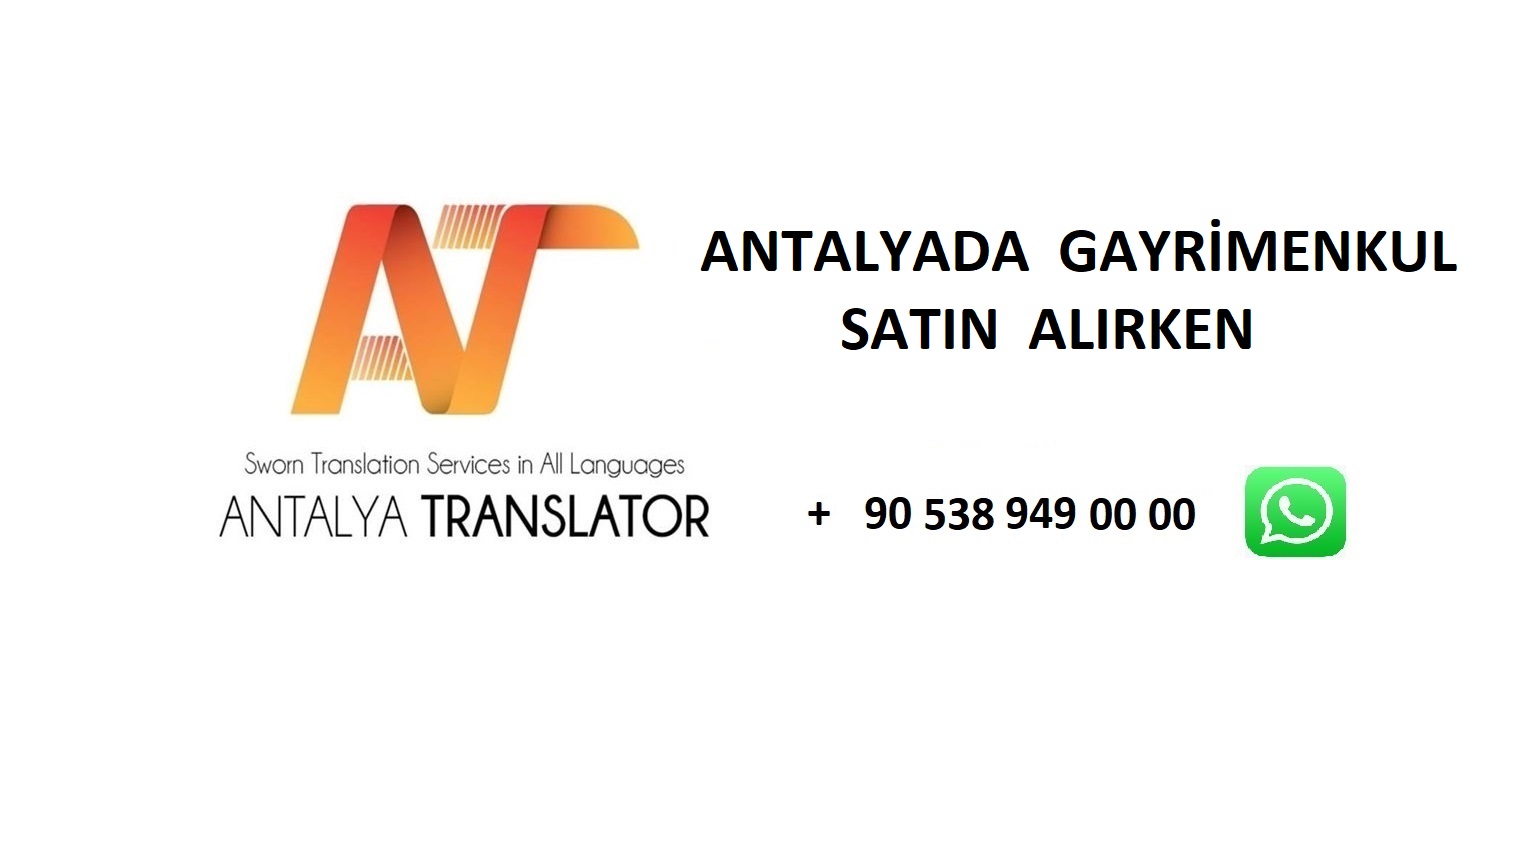 Antalya da Gayrimenkul Satın Alırken